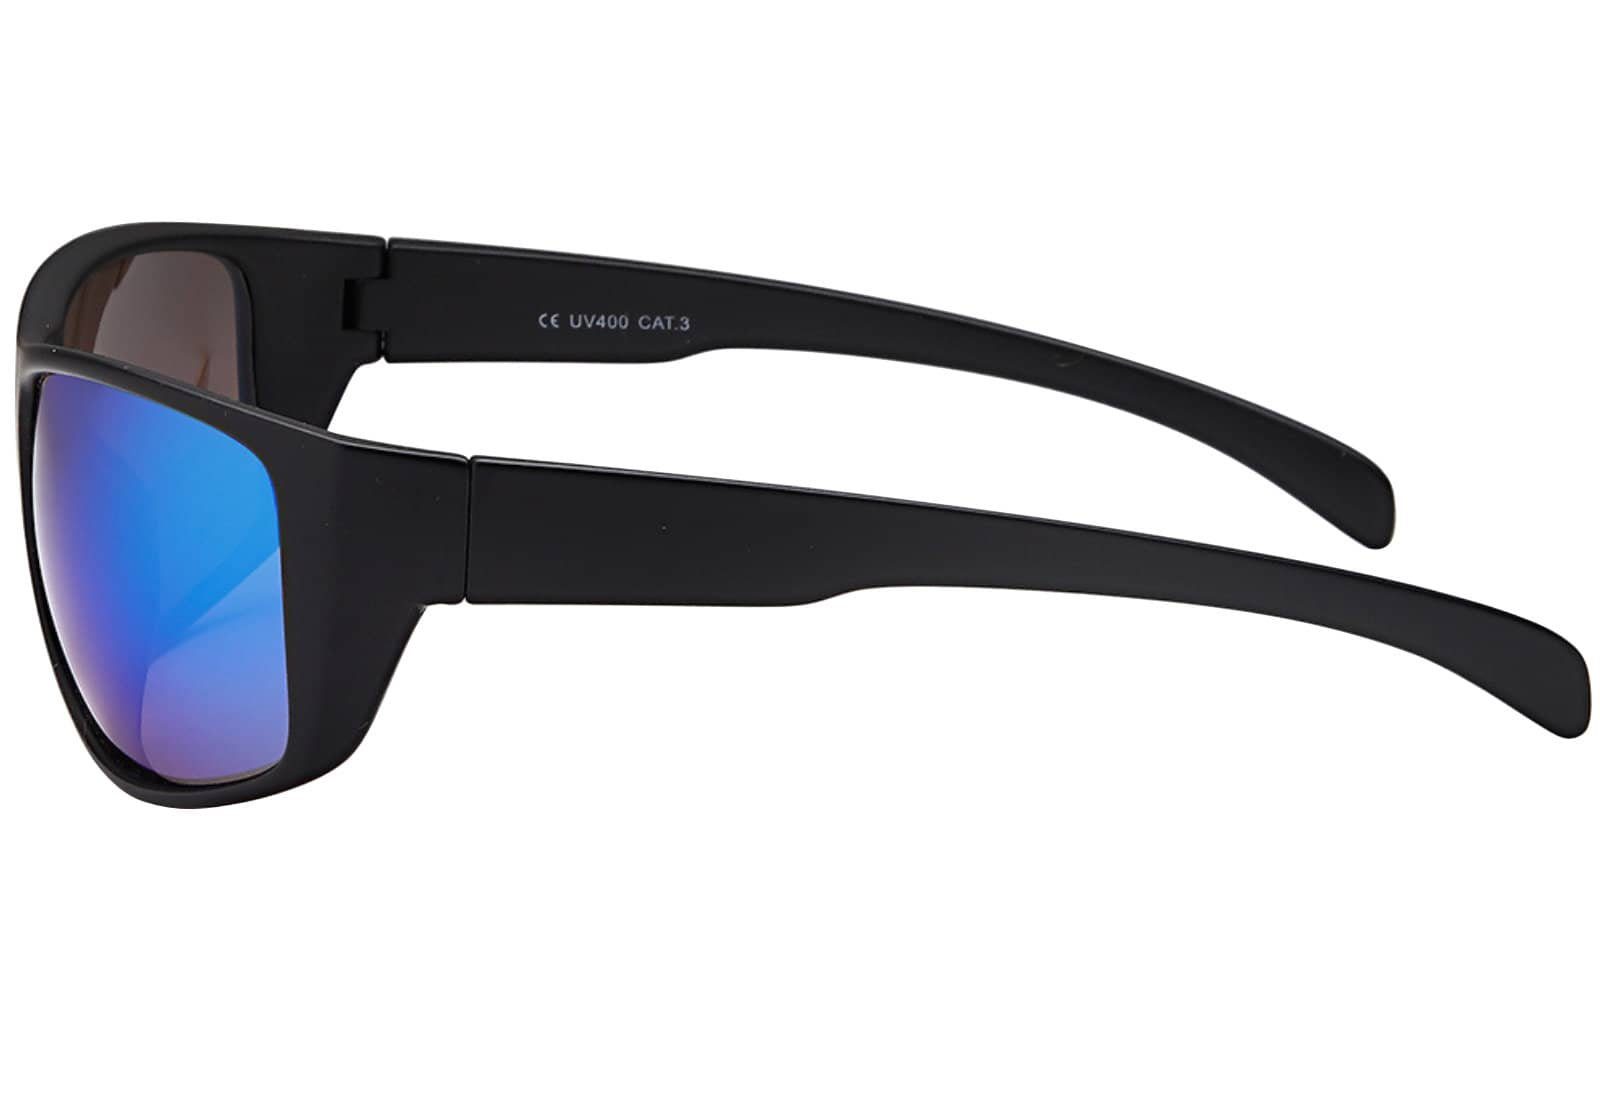 Sonnenbrille Linsen Blau BEZLIT Eyewear mit Sportliche Sonnenbrille (1-St) schwarzen